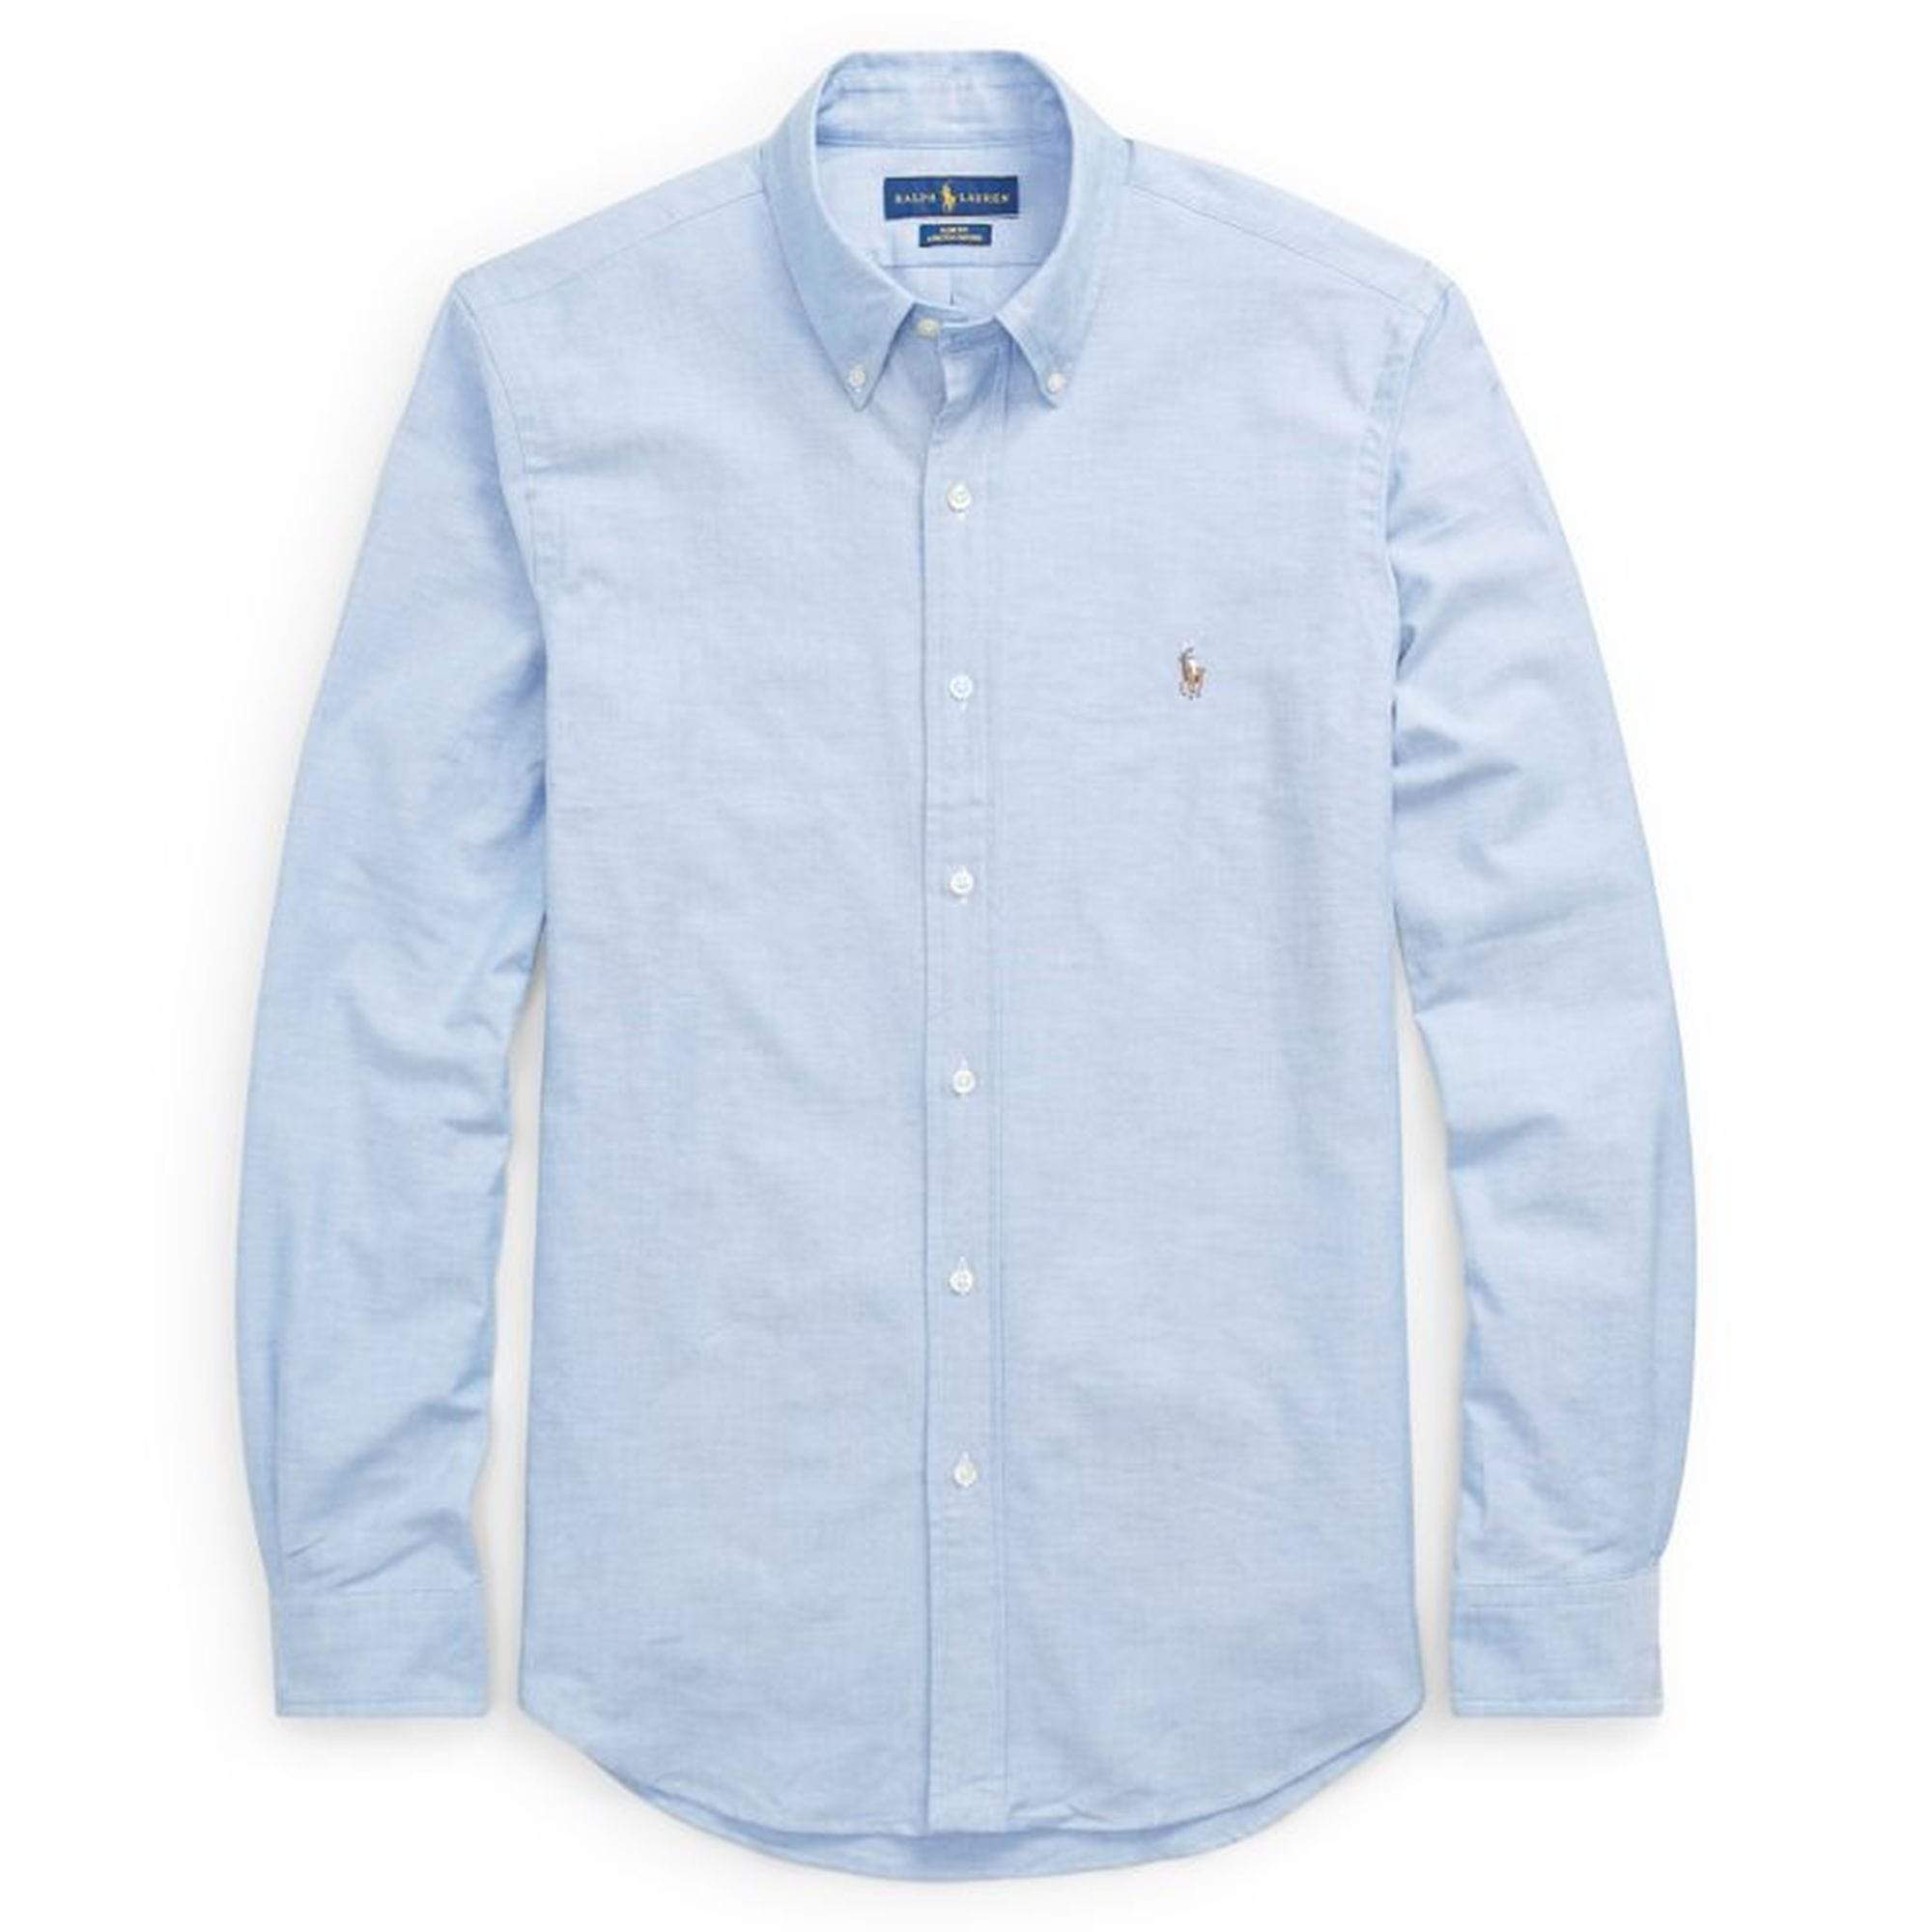 Polo Ralph Lauren - Shirts - Polo Ralph Lauren Blue Oxford Shirt